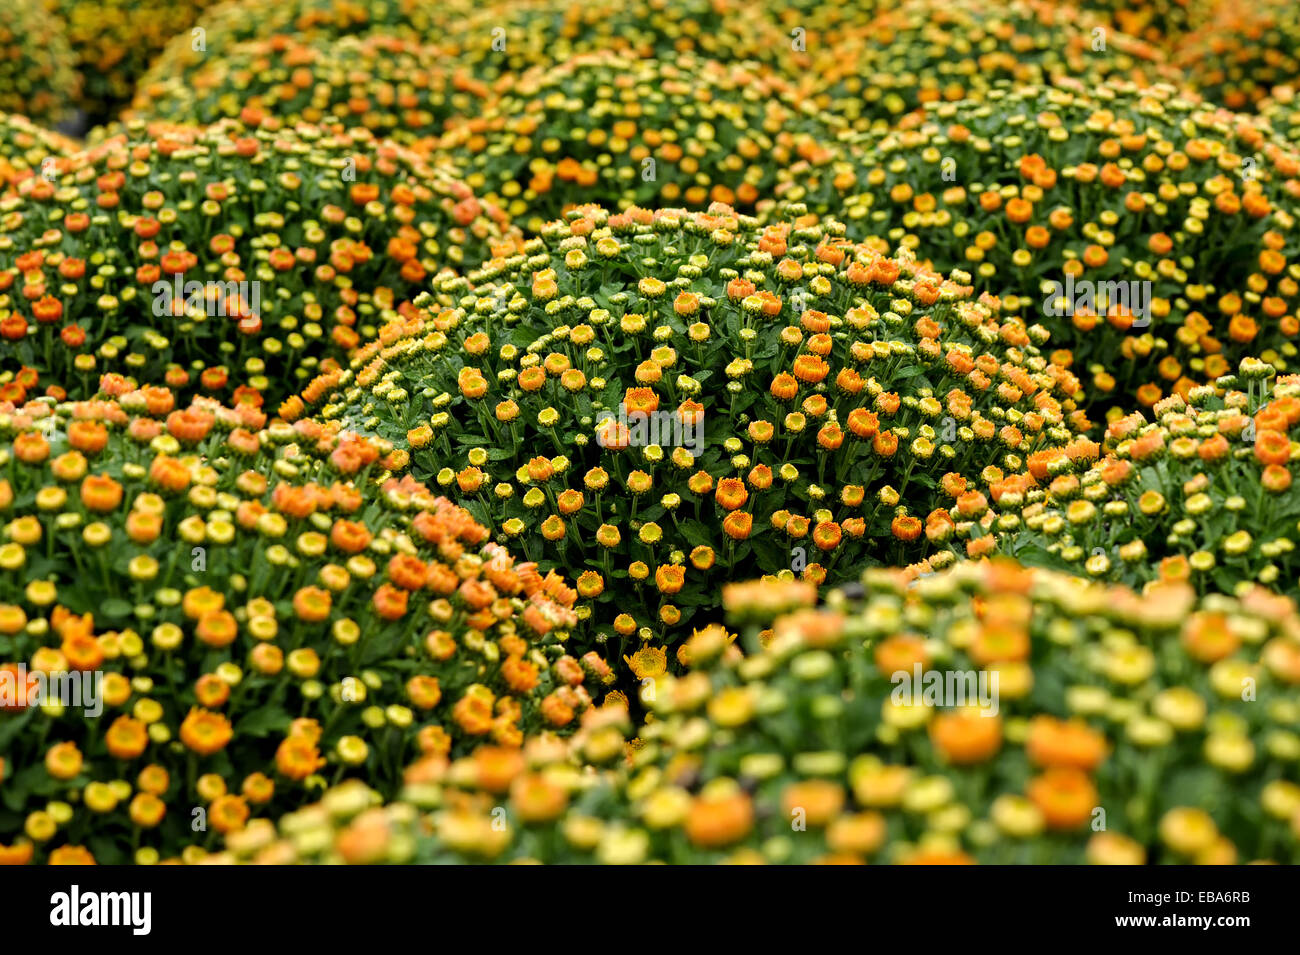 Plenty Beautiful and Fresh Small Orange and Yellow Chrysanthemum Stock Photo